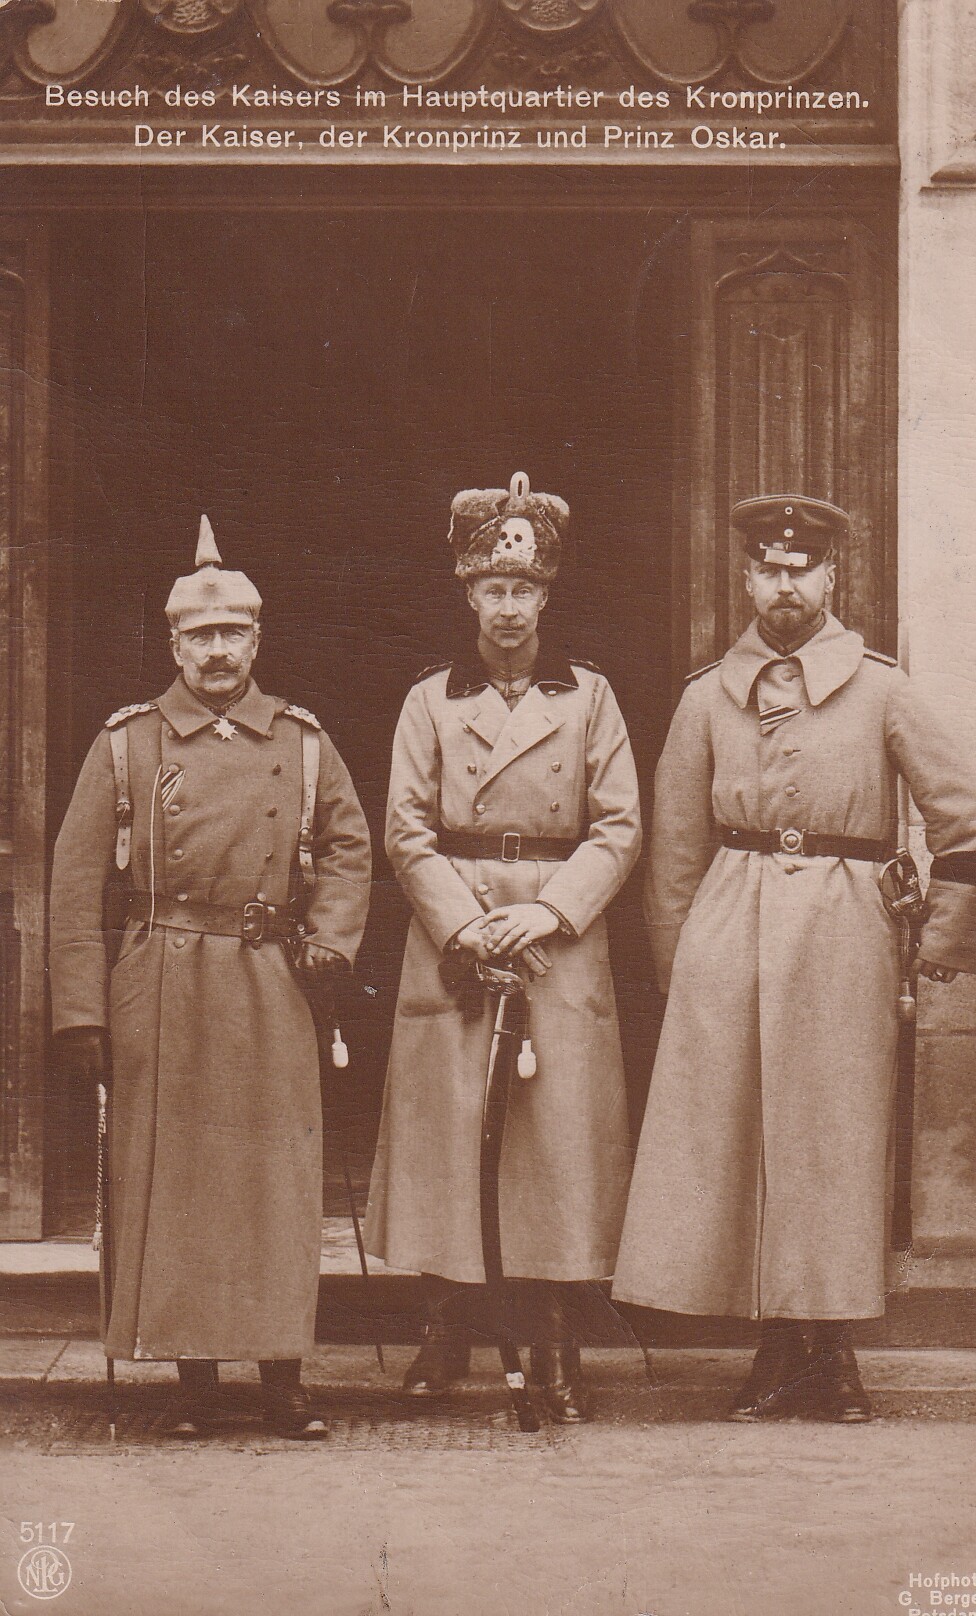 Bildpostkarte mit Foto Kaiser Wilhelms II. (1859-1941) im Hauptquartier des Kronprinzen Wilhelm (1882-1951) mit Prinz Oskar (1888-1958), 1915 (Schloß Wernigerode GmbH RR-F)